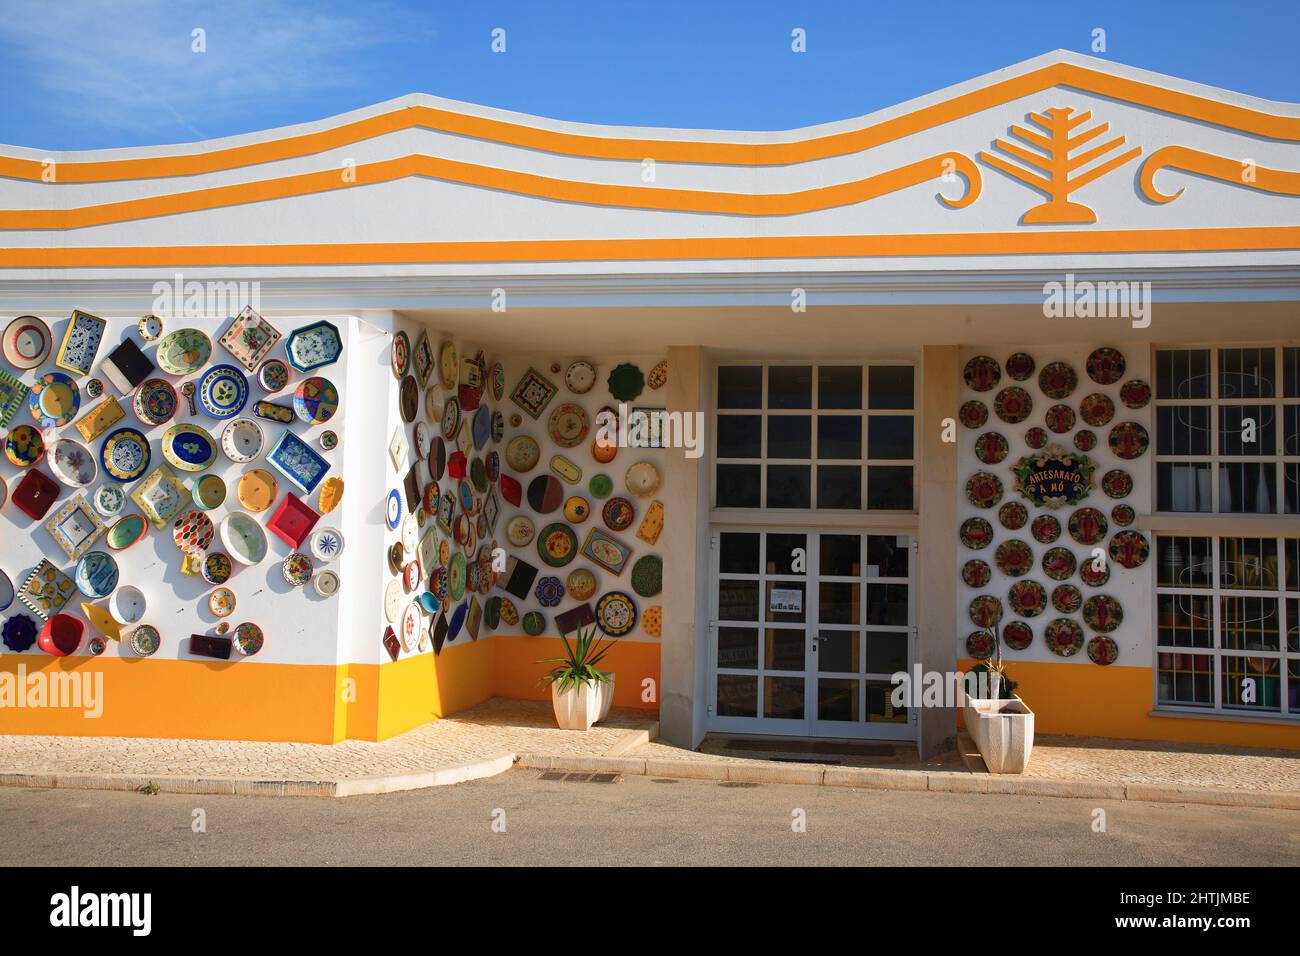 Keramikhändler, Dekorationsfassade, bei Sagres, Algarve, Portogallo, Geschäftsdekoration einer Keramikhändler Foto Stock